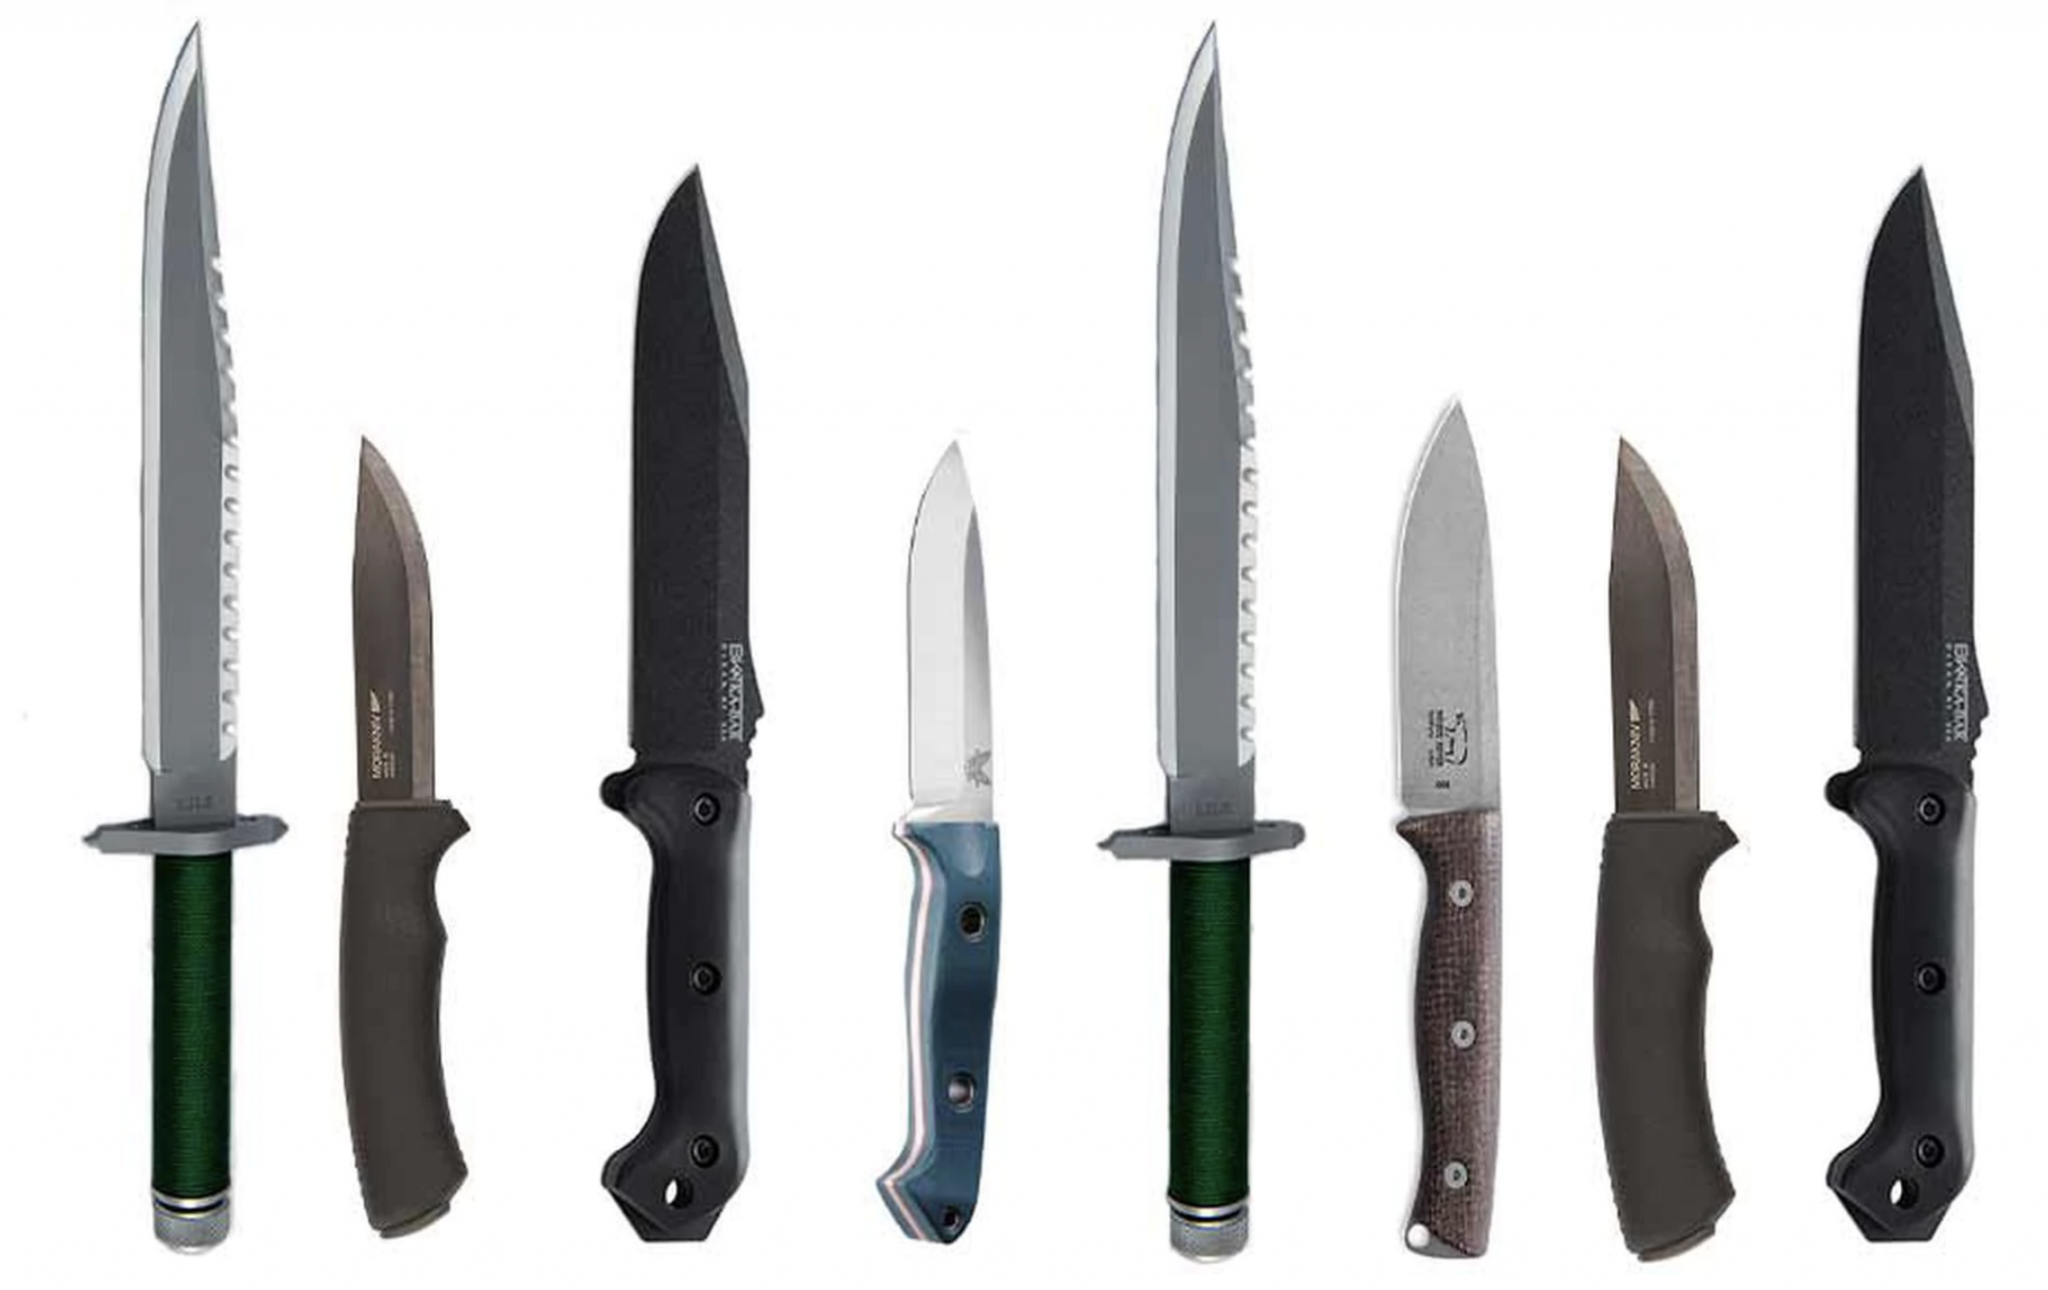 Bushcraft Knives vs. Survival Knives